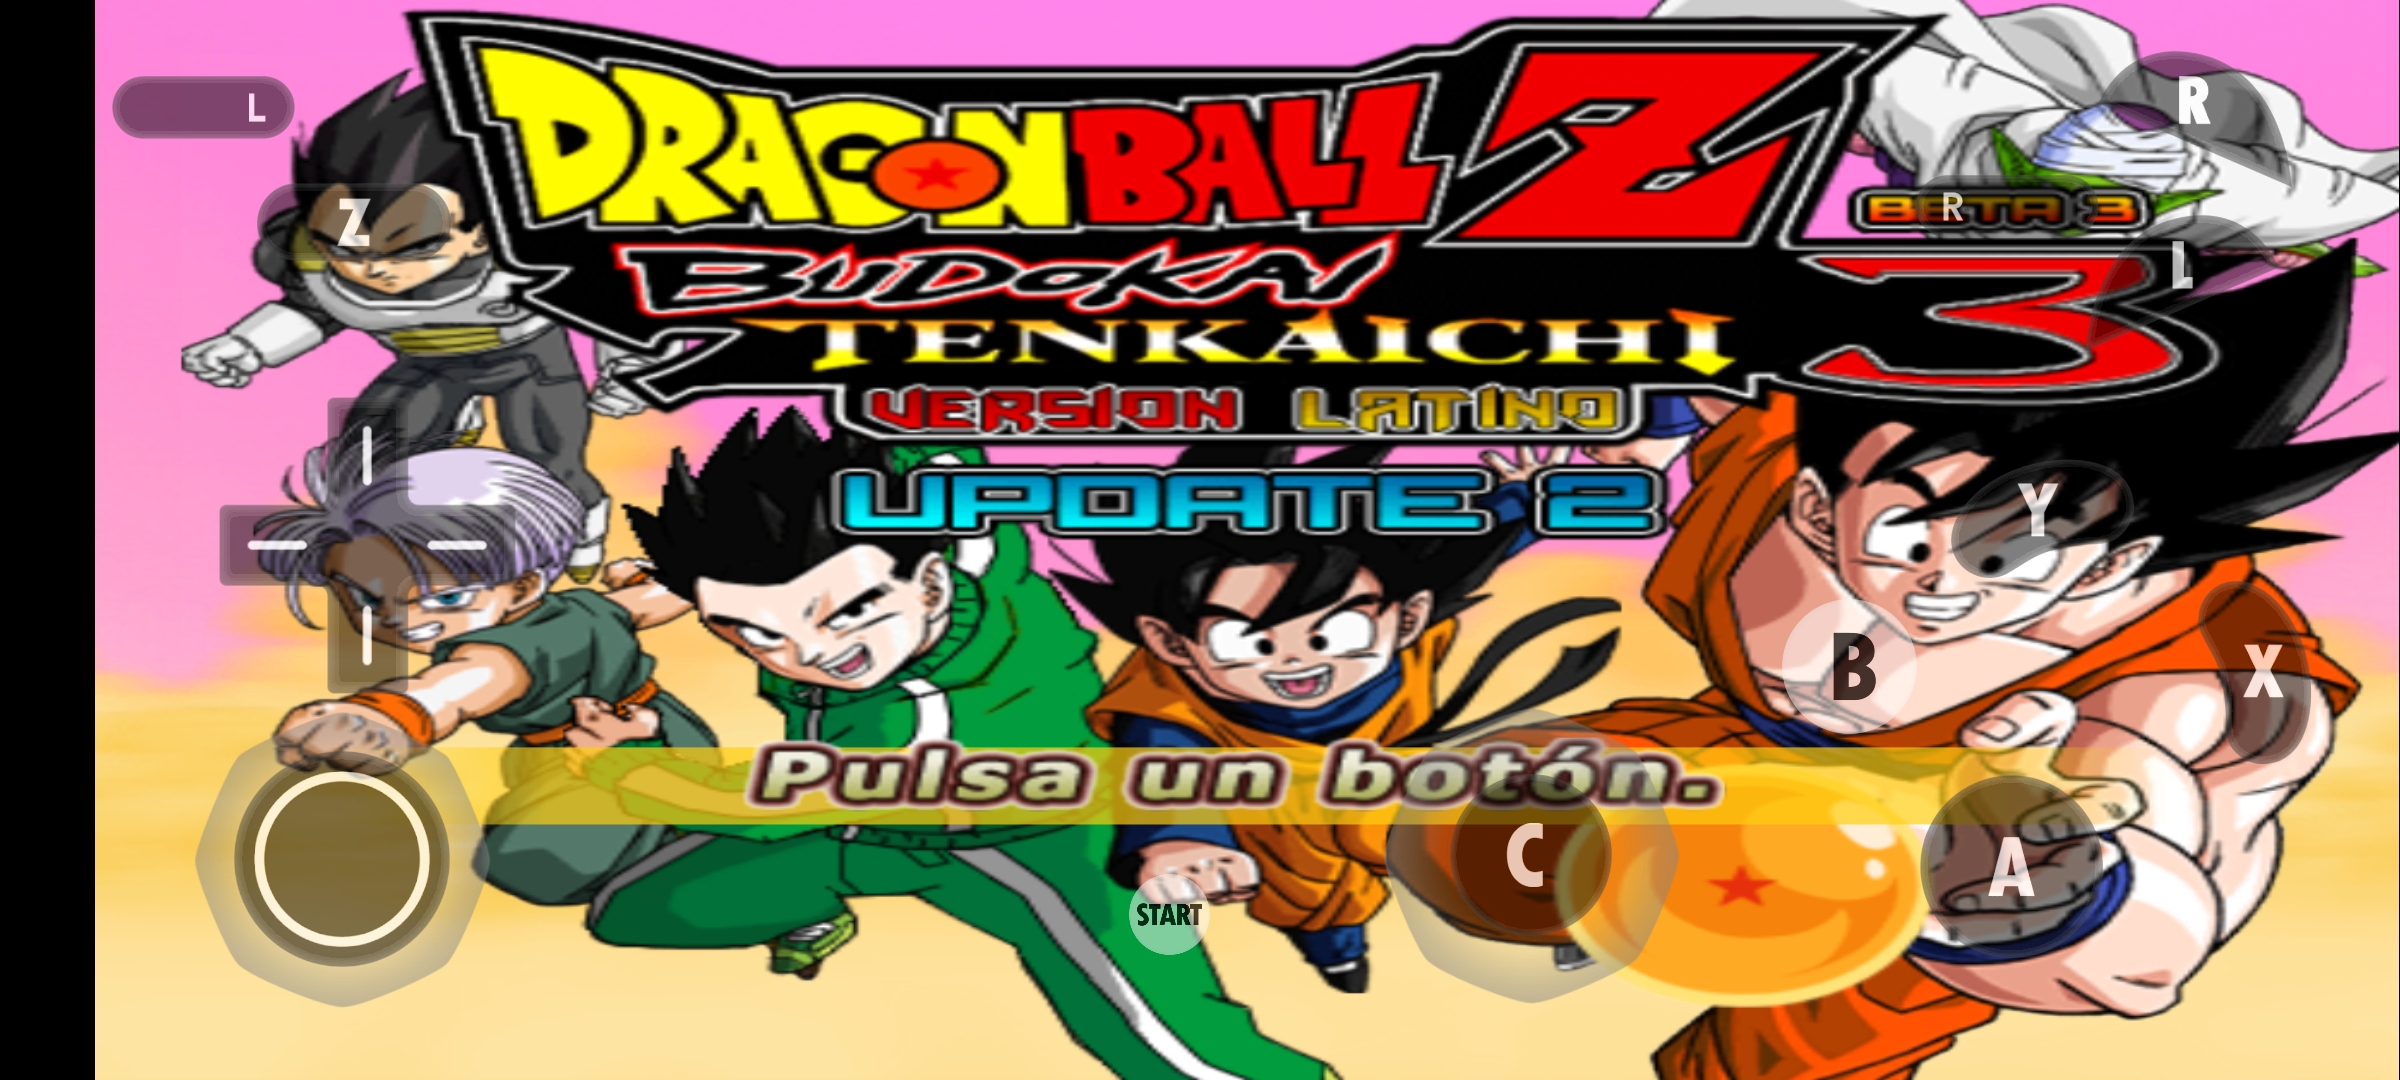 Dragon Ball Z Budokai TENKAICHI 3 on Android with Faster